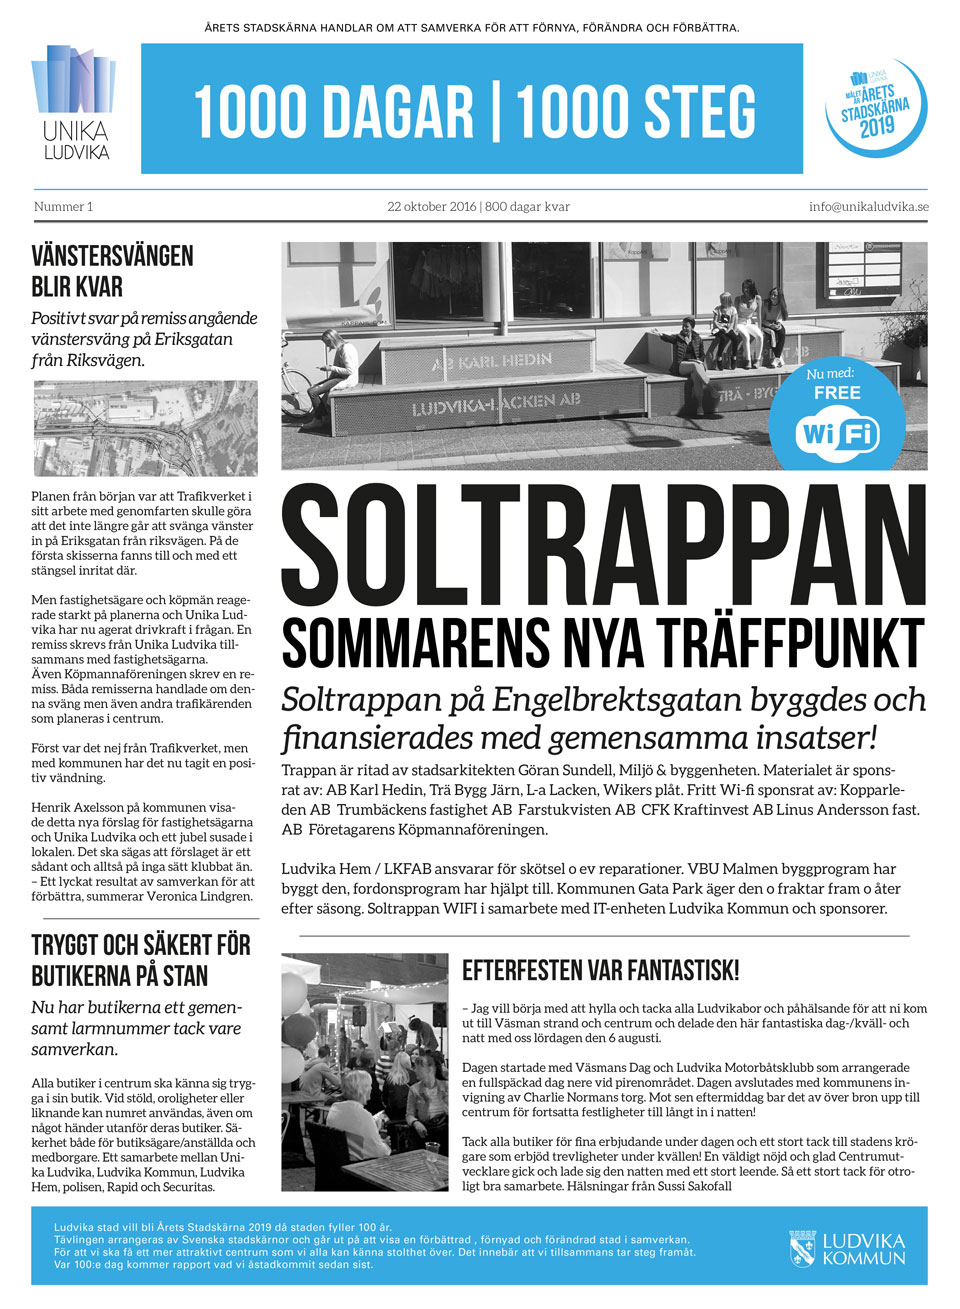 ÅS_Anslag_Headline_okt16